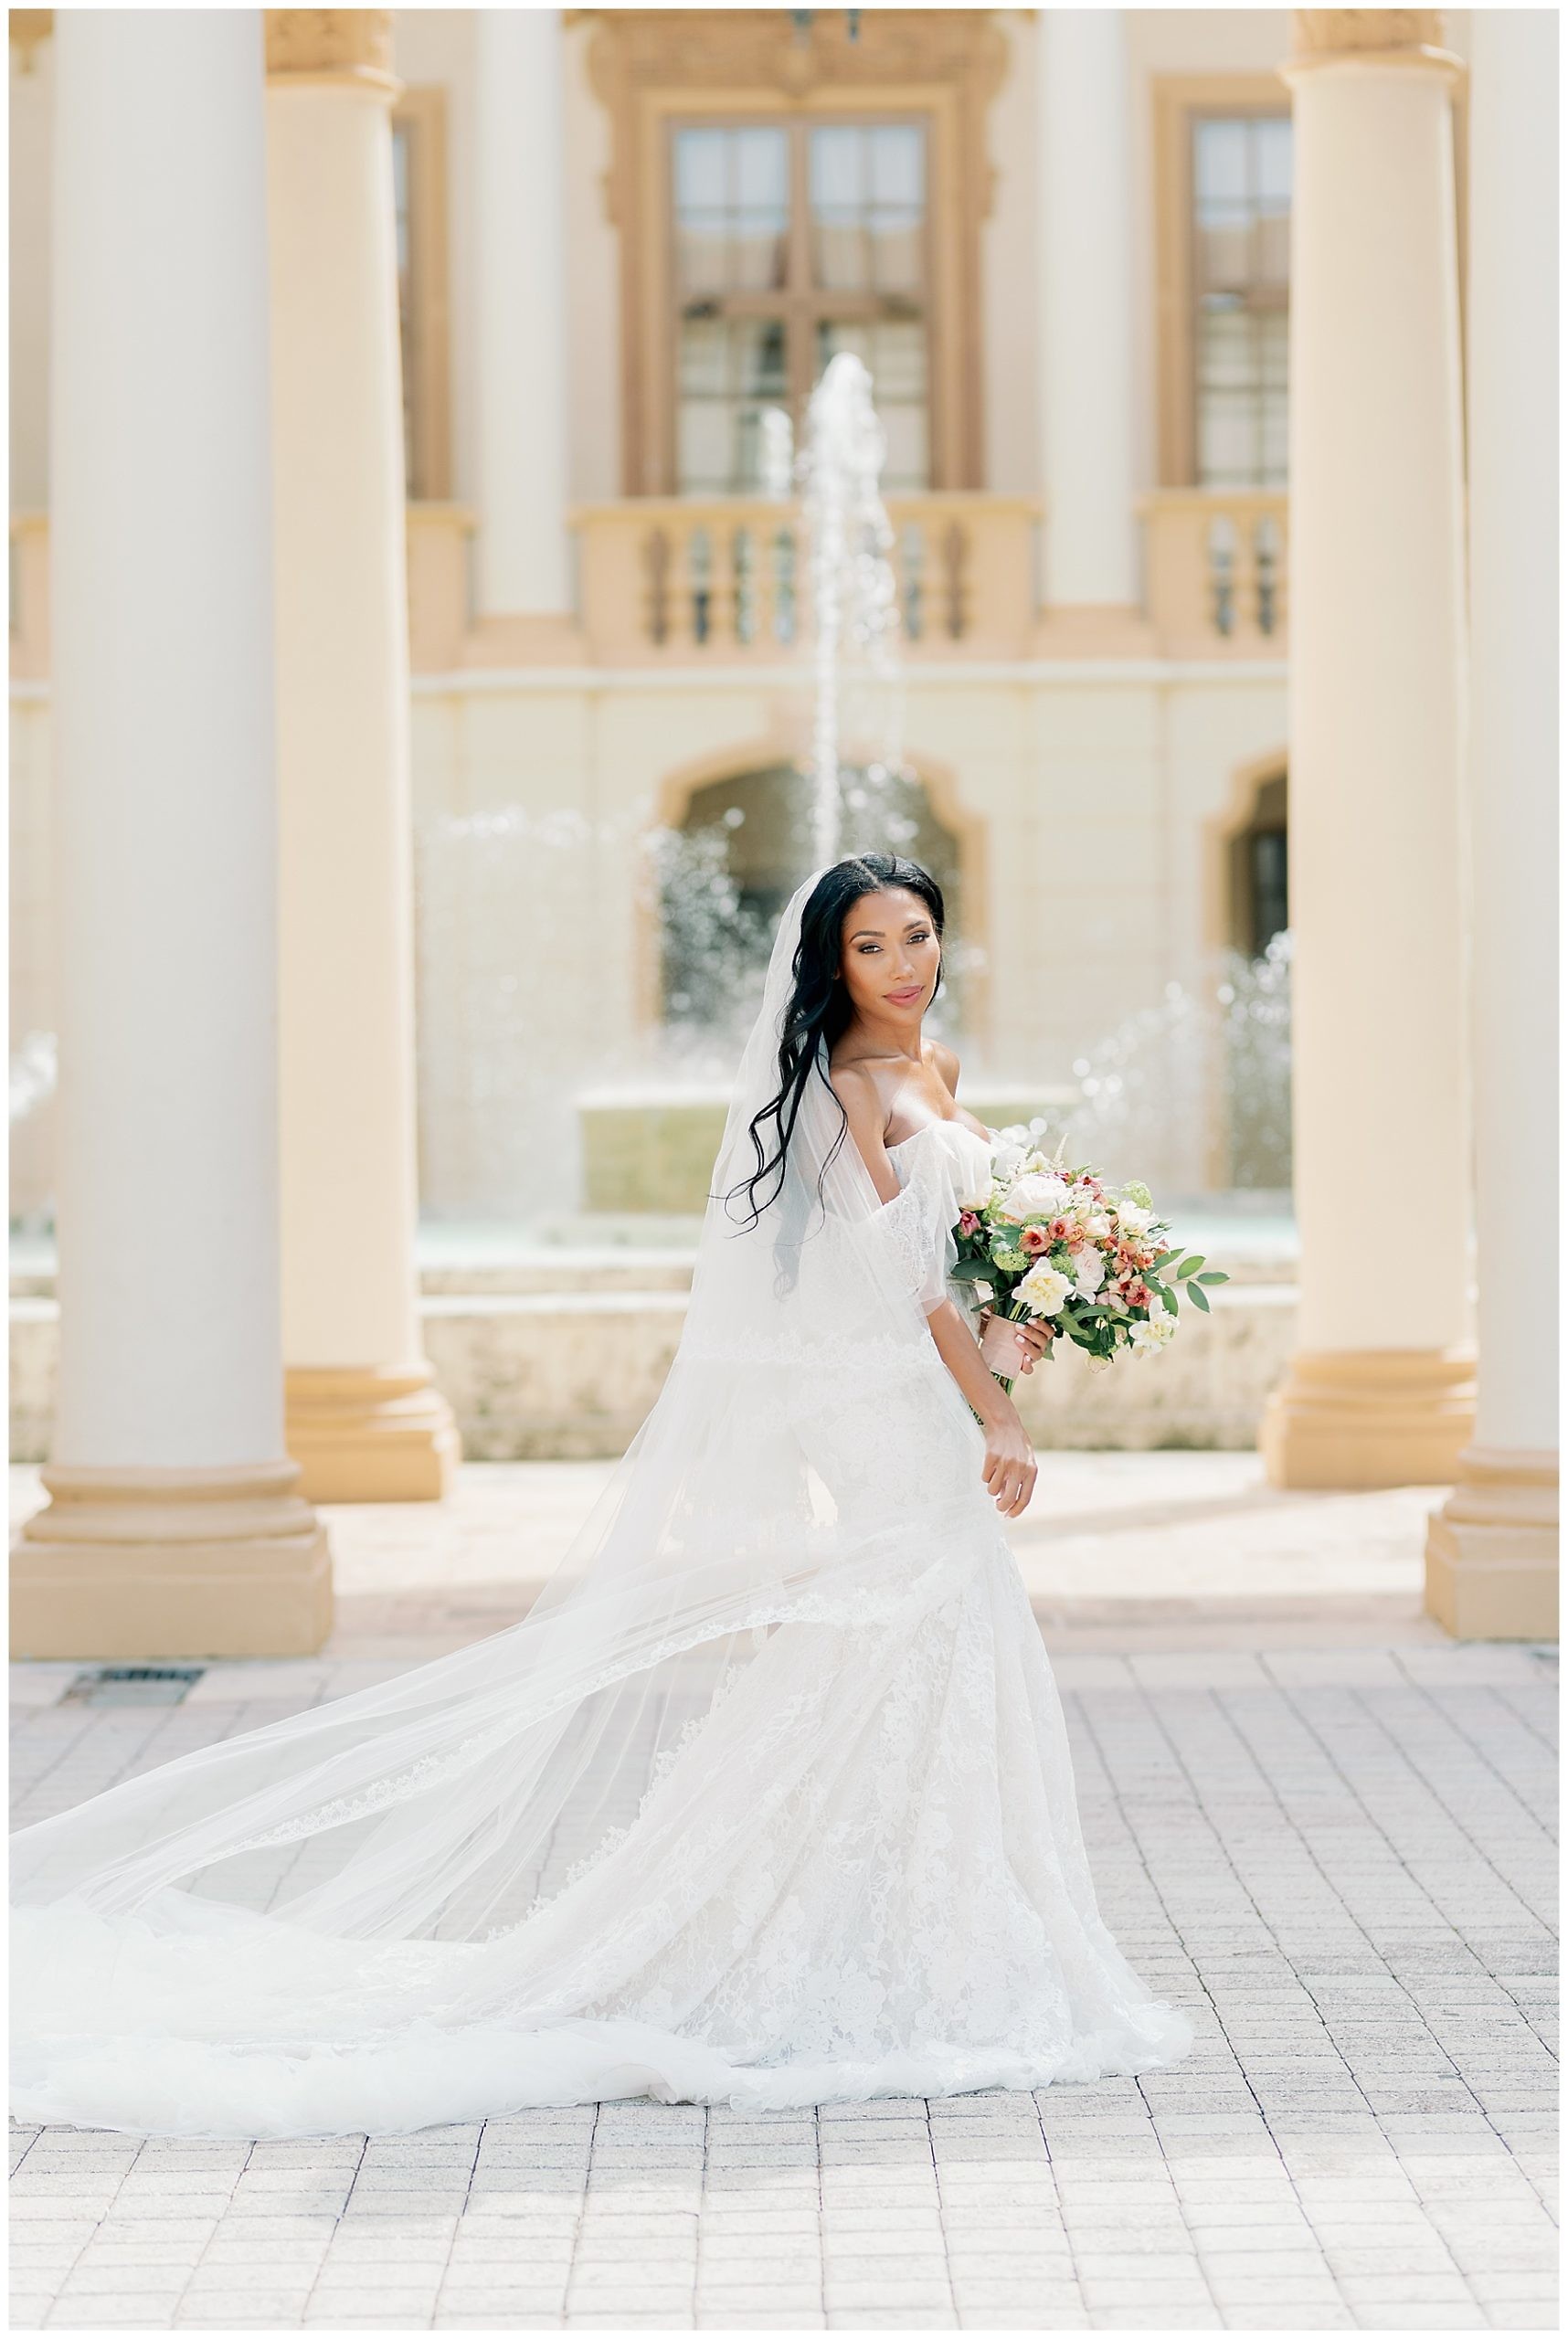 KristinLeannePhotography_DestinationWedding_Biltmore Hotel Miami Wedding_0275.jpg